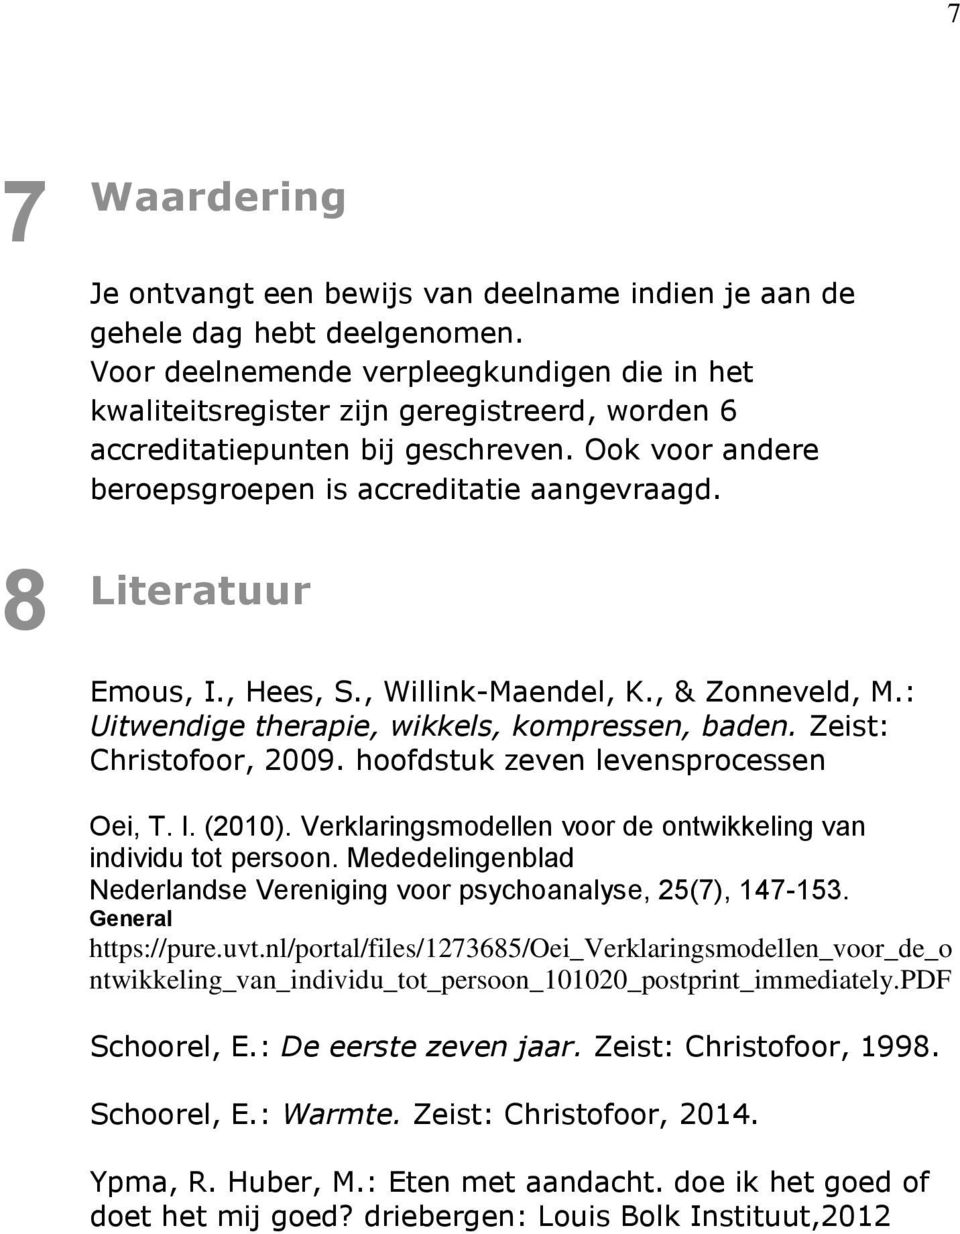 Literatuur Emous, I., Hees, S., Willink-Maendel, K., & Zonneveld, M.: Uitwendige therapie, wikkels, kompressen, baden. Zeist: Christofoor, 2009. hoofdstuk zeven levensprocessen Oei, T. I. (2010).